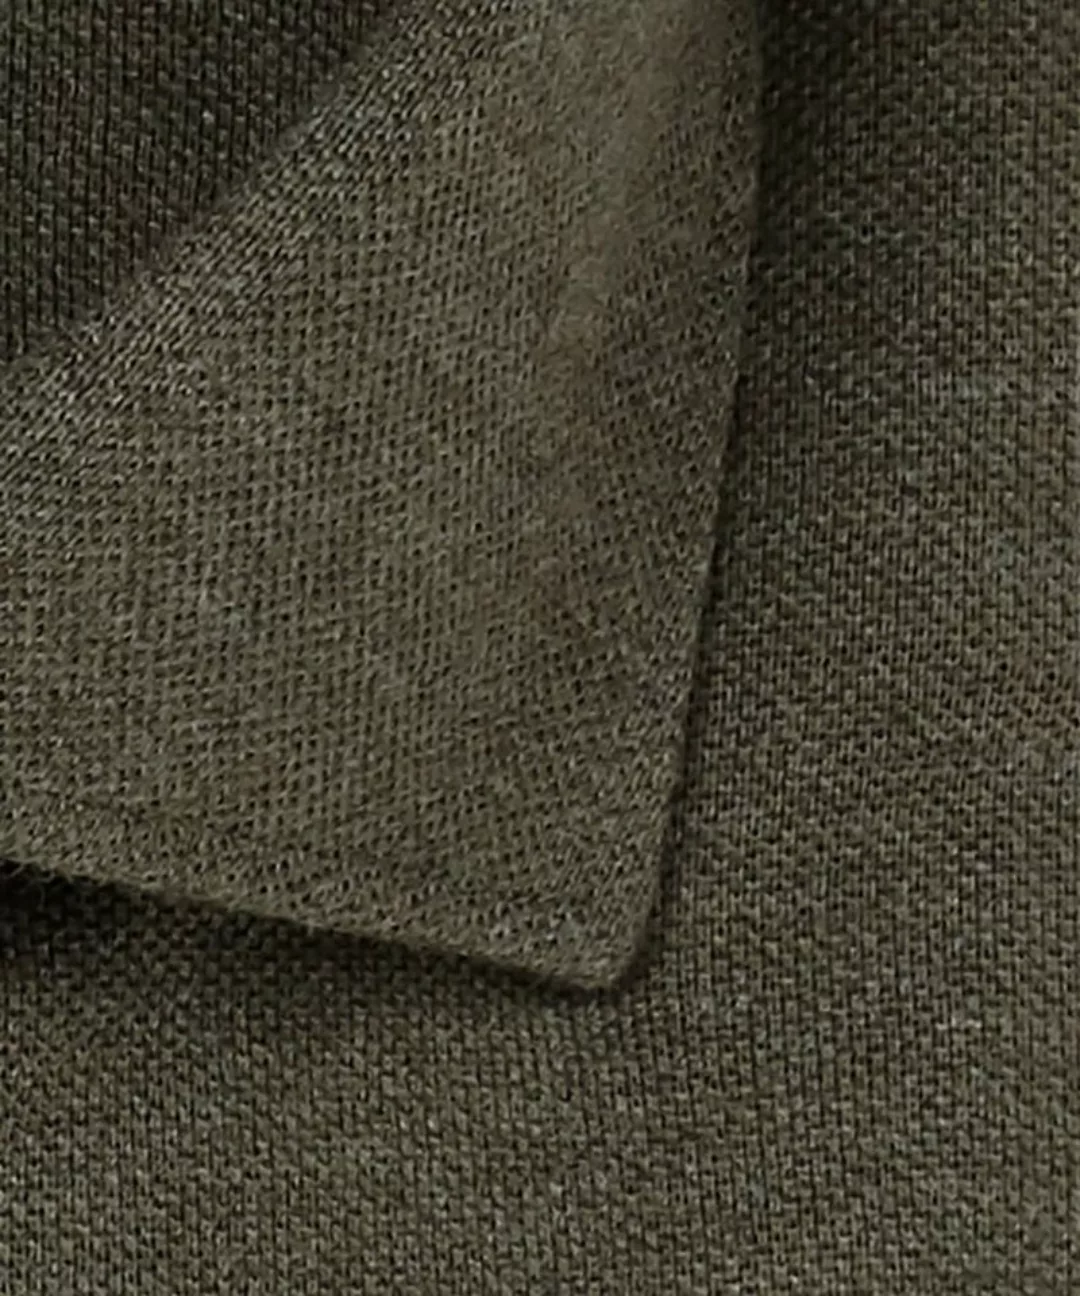 Profuomo Hemd Knitted Slim Fit Grün - Größe 43 günstig online kaufen